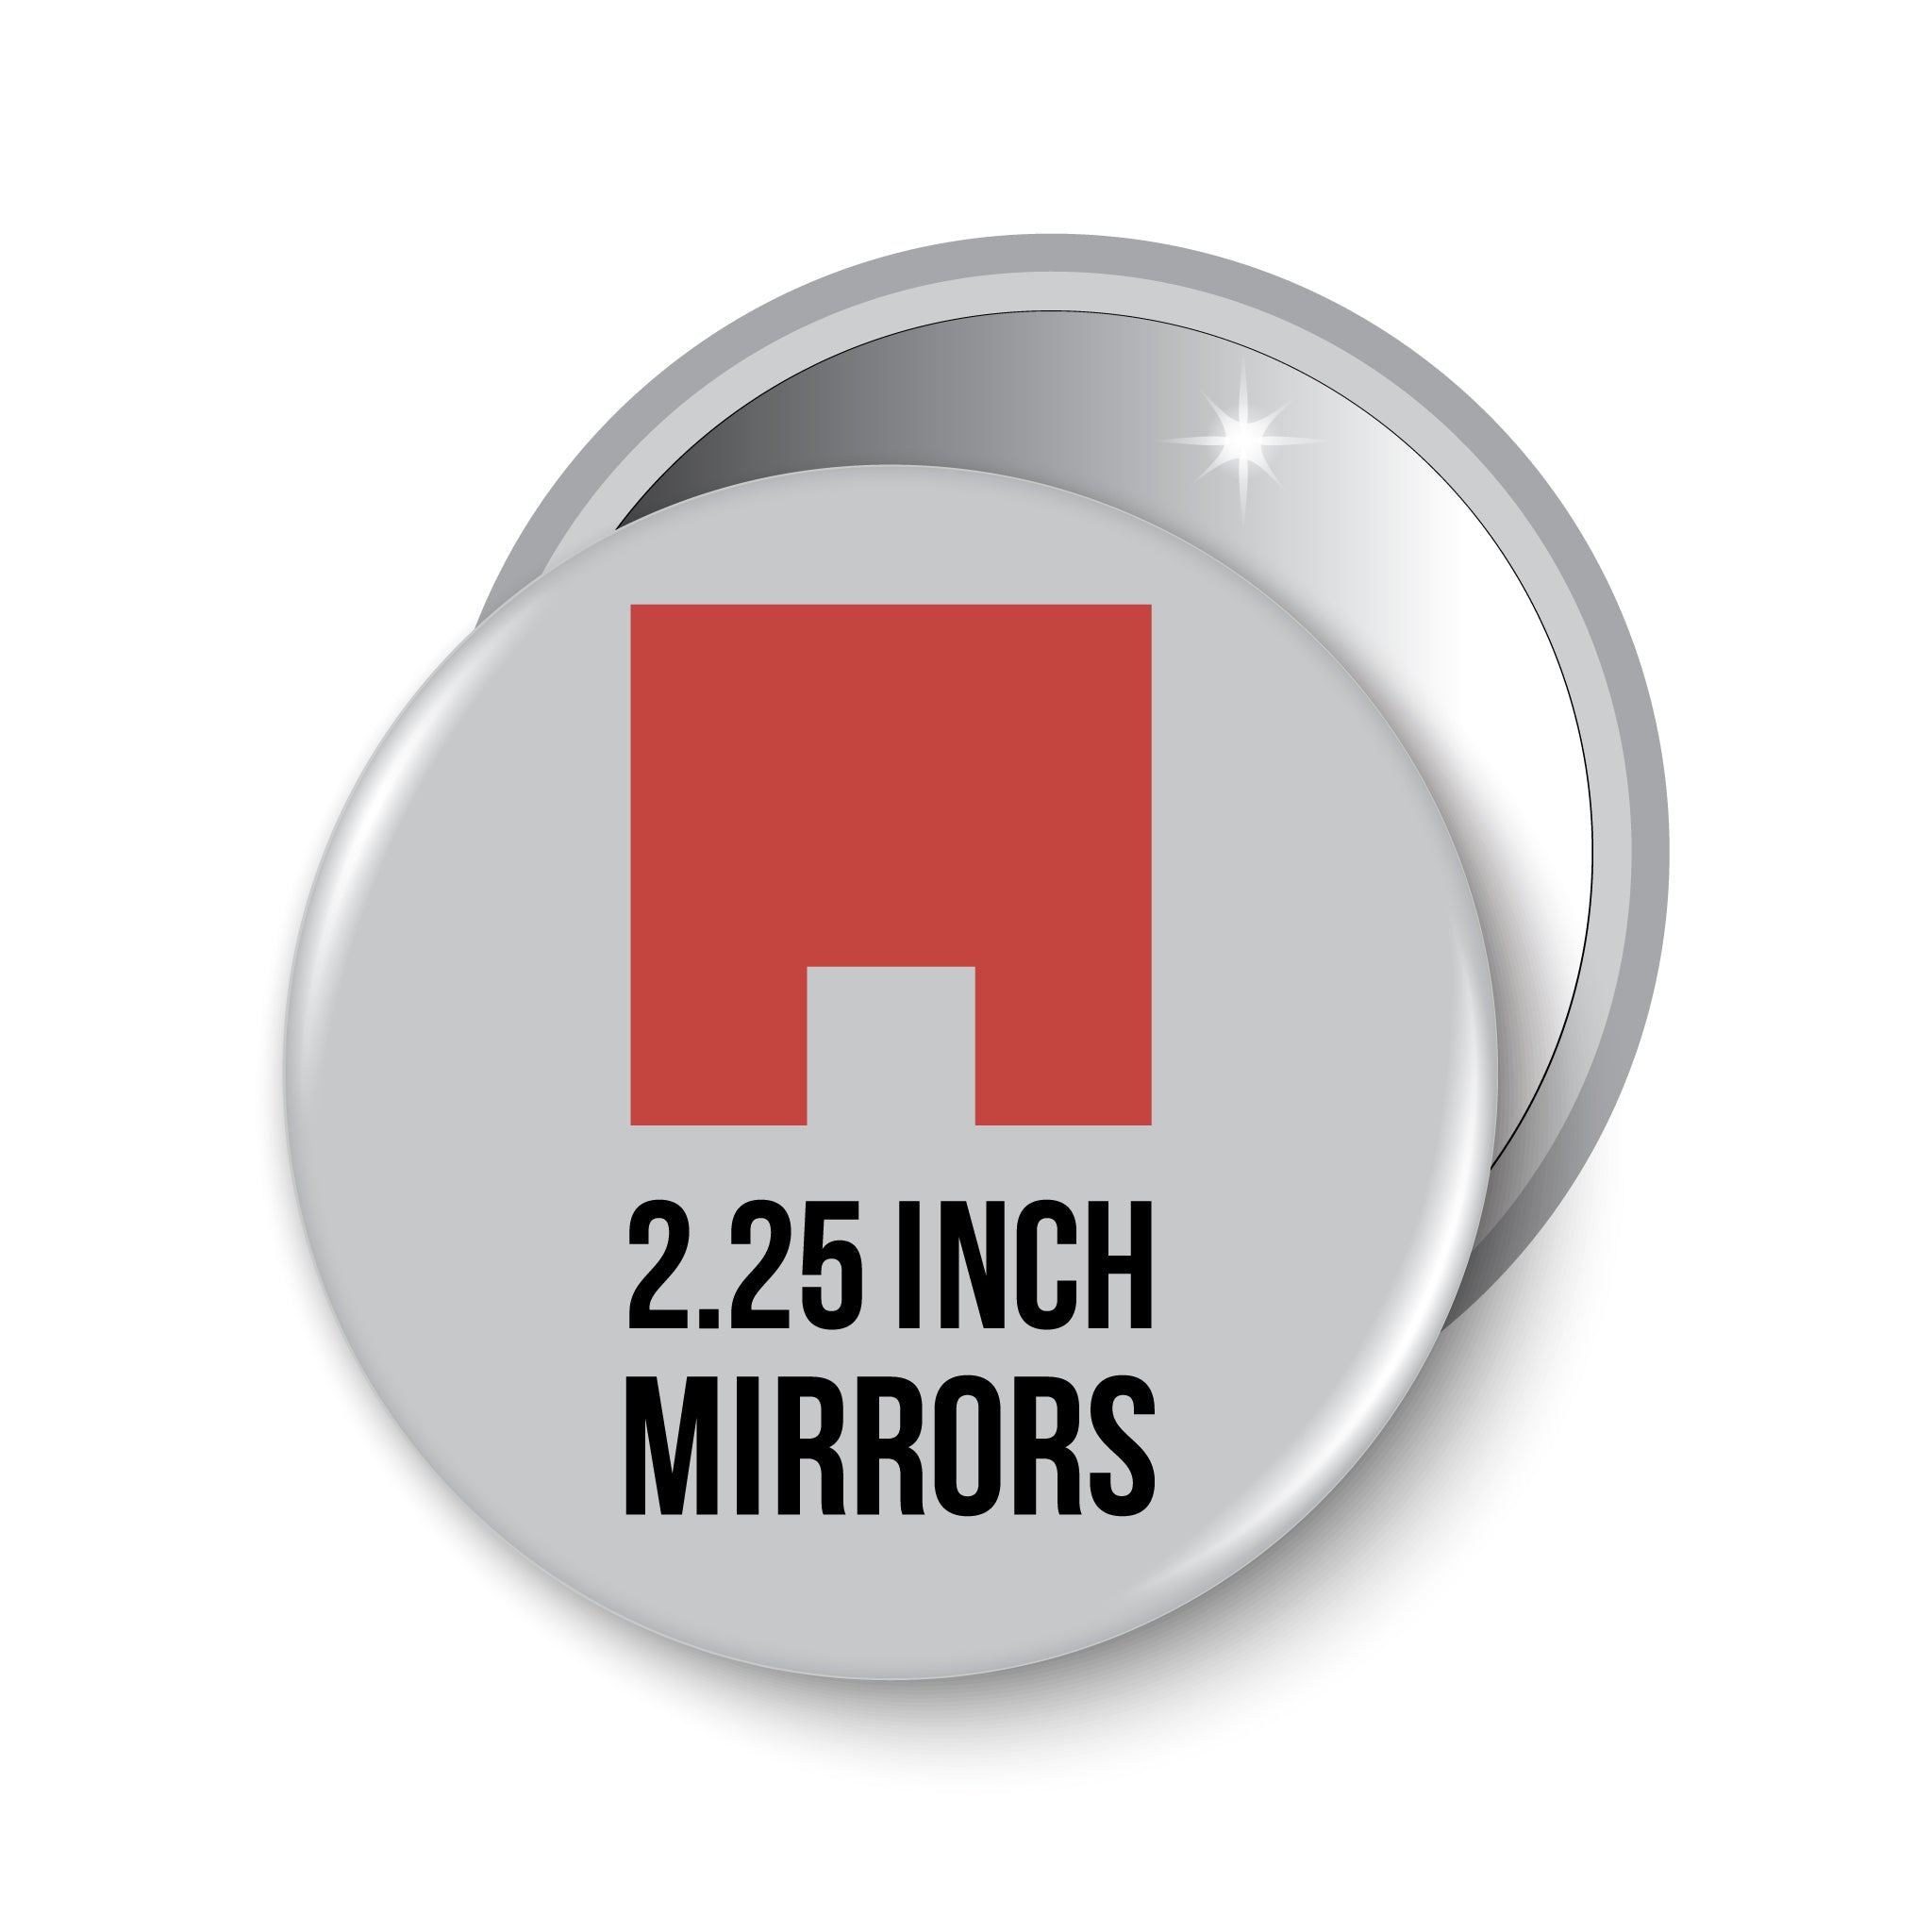 2.25" Pocket Mirror